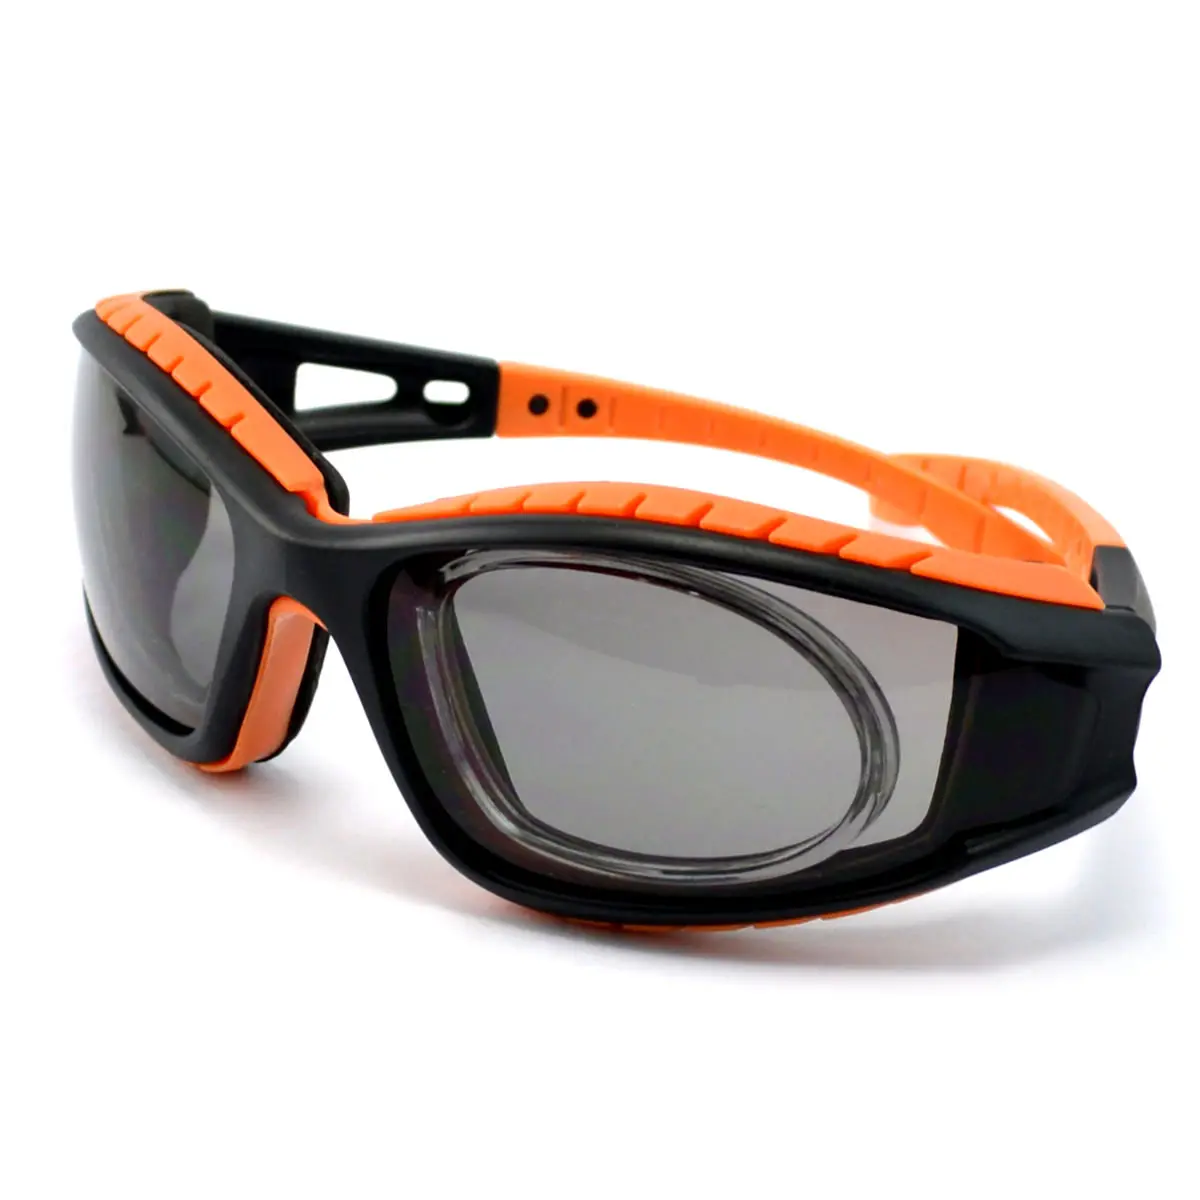 Óculos de segurança esportivos personalizados oem, óculos industriais com pernas removíveis, lentes transparentes de borracha macia, armação Rx para esportes